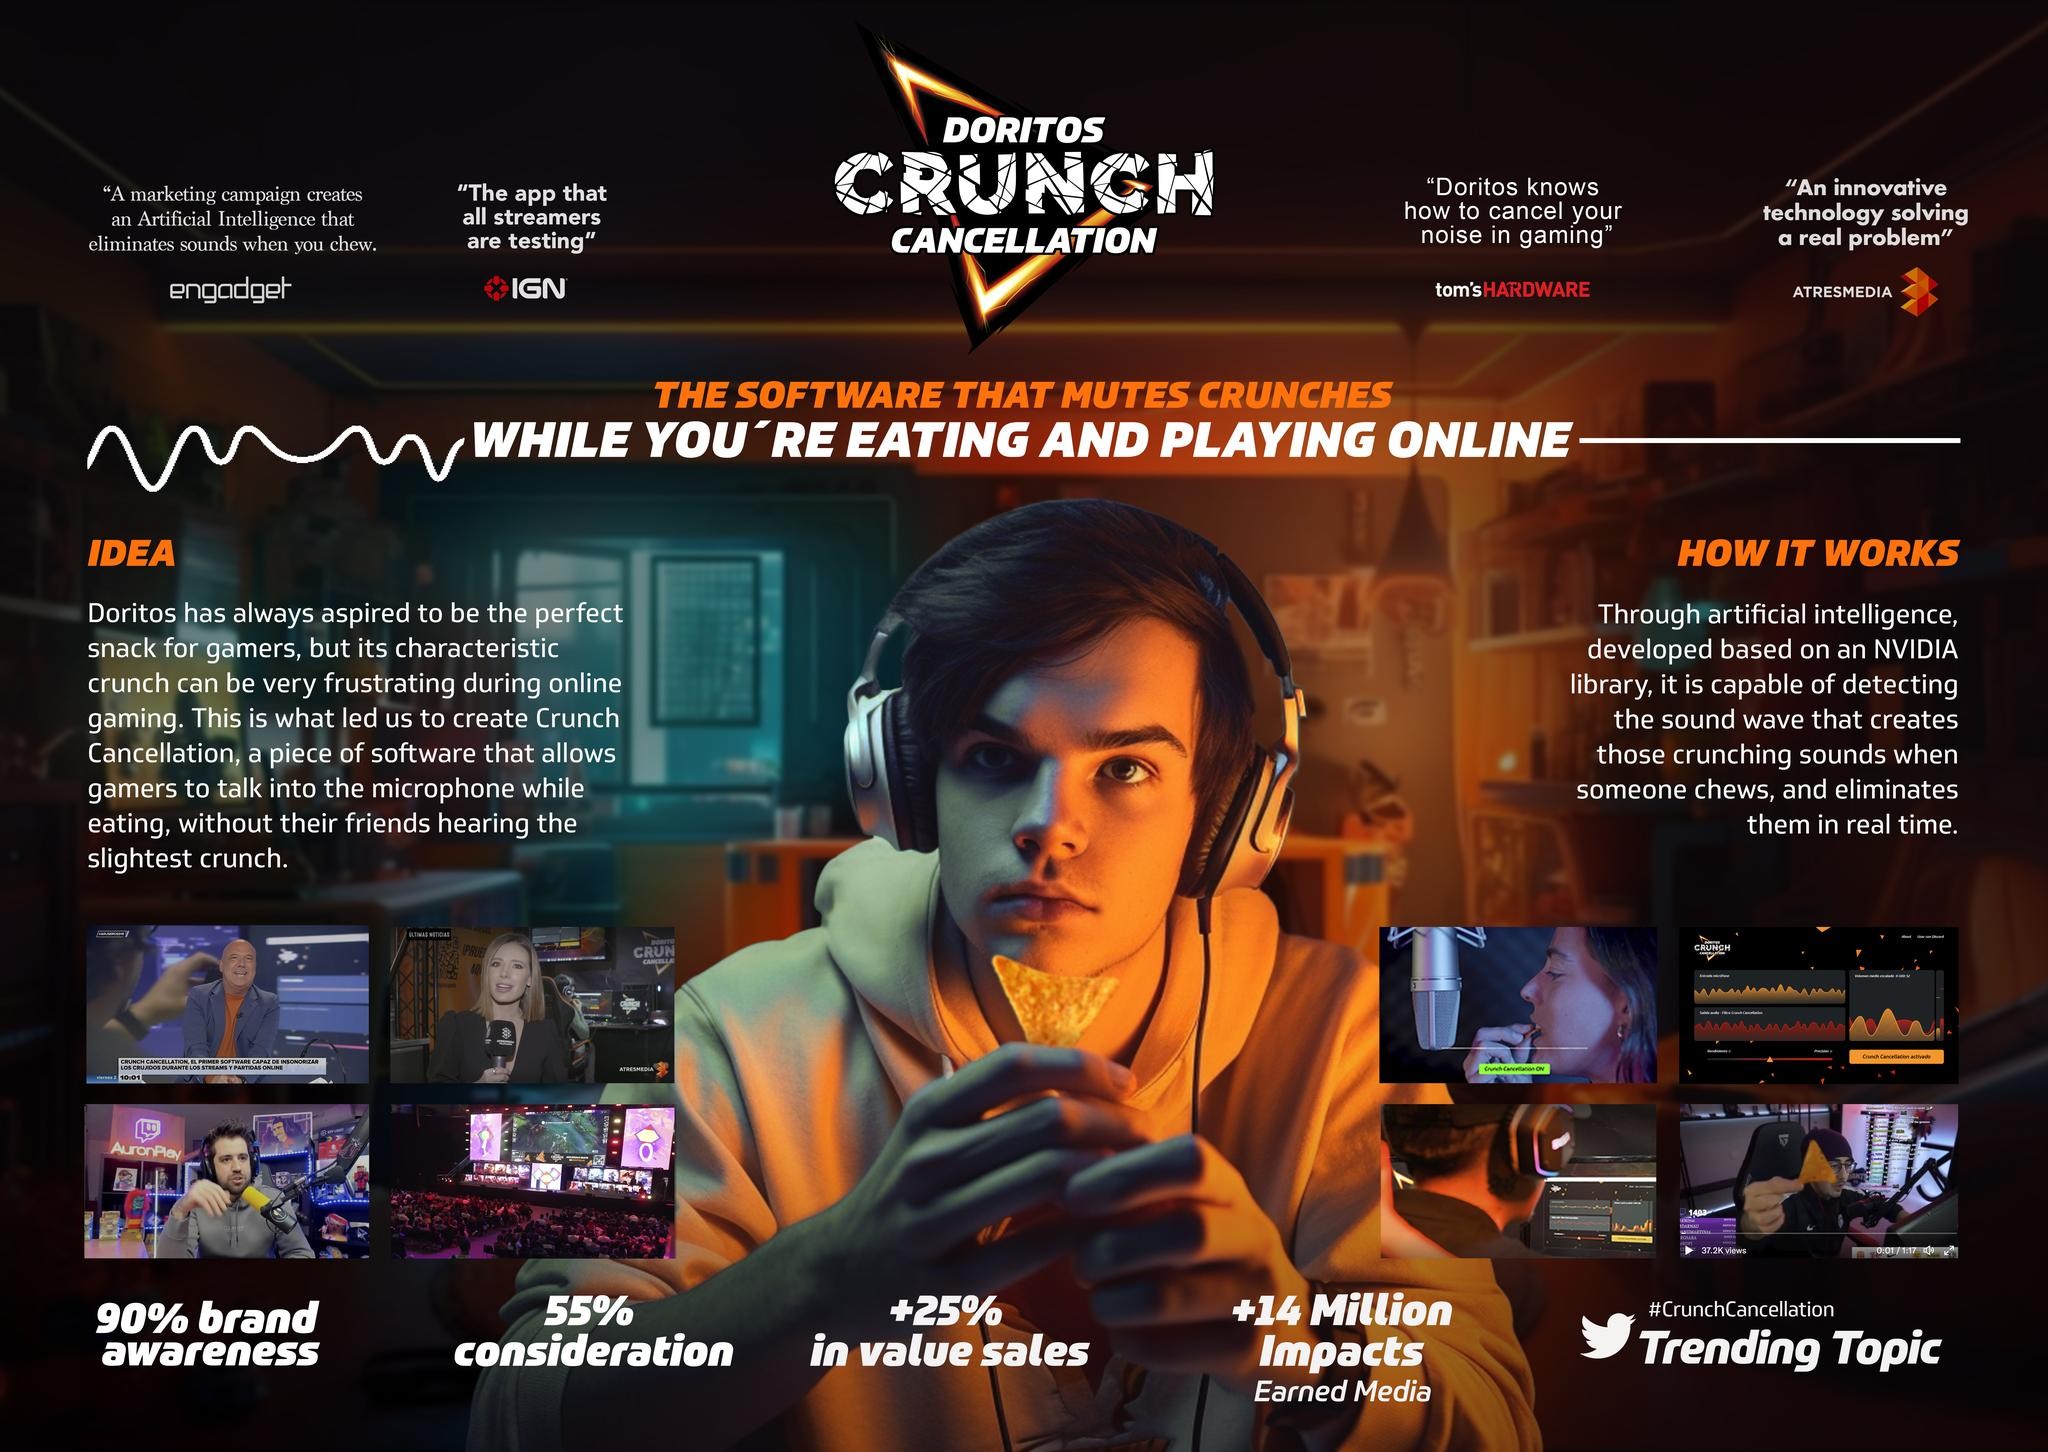 Doritos Crunch Cancellation